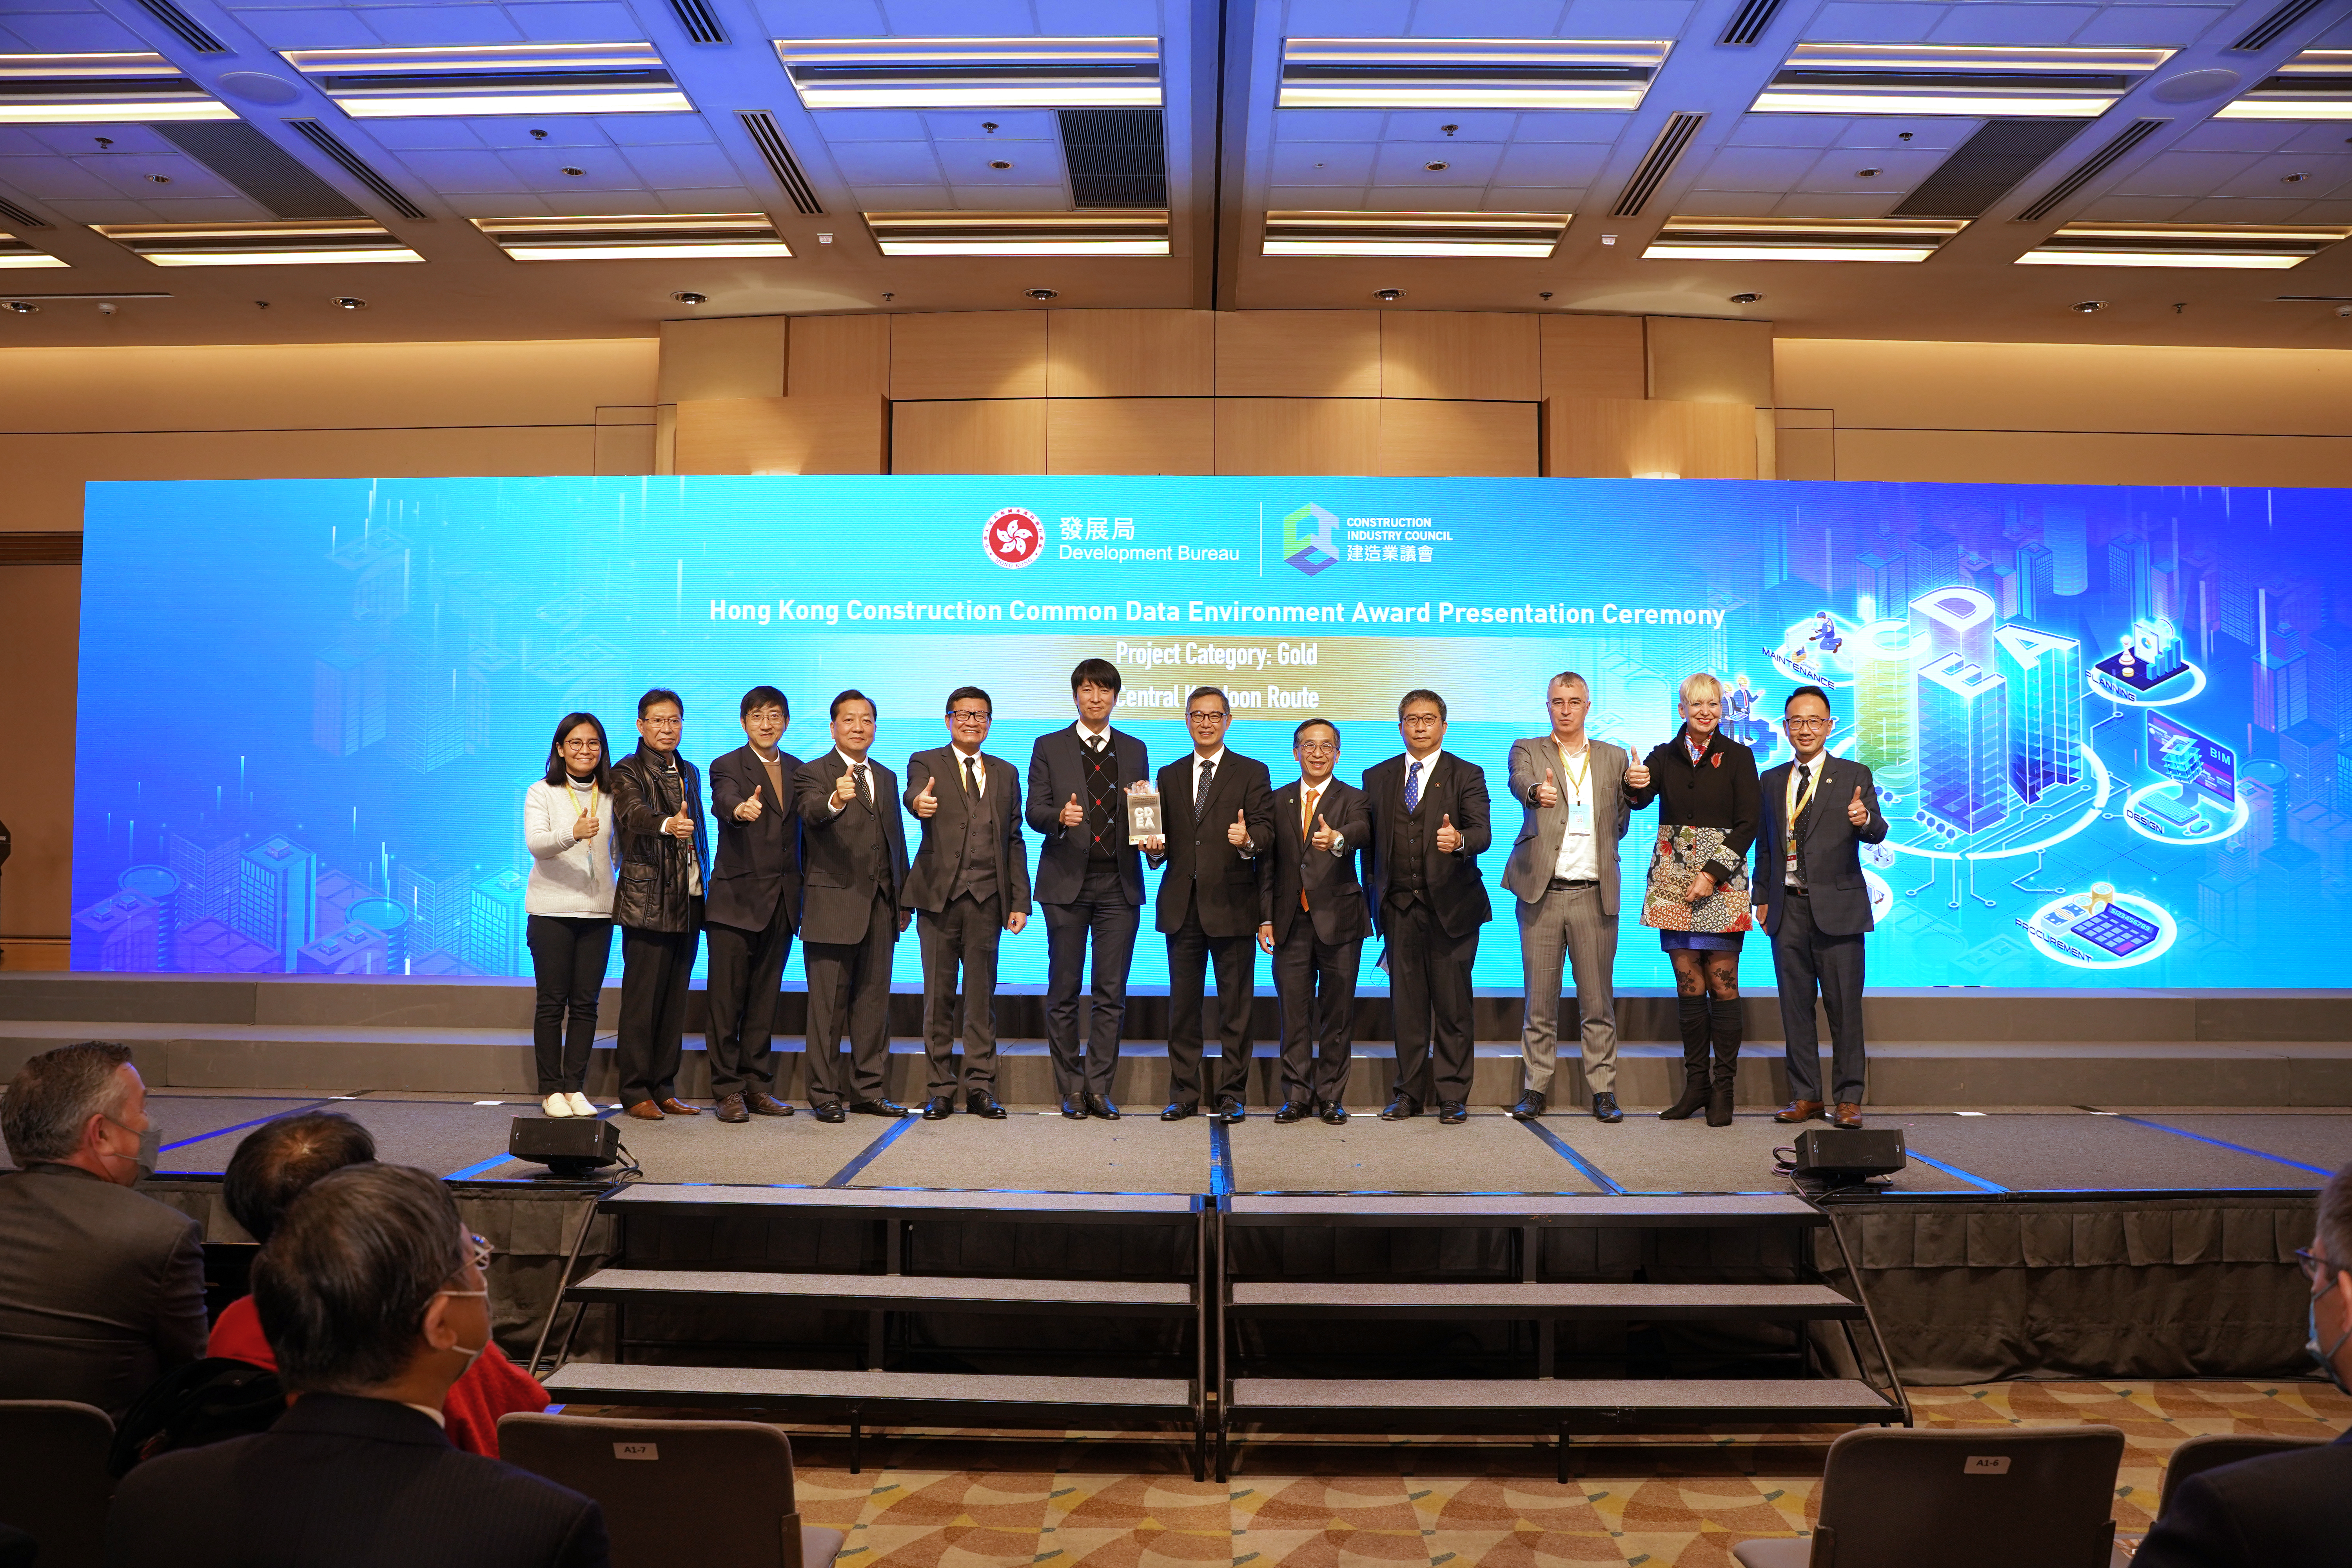 Hong Kong Construction Common Data Environment Award – Gold Award under project category